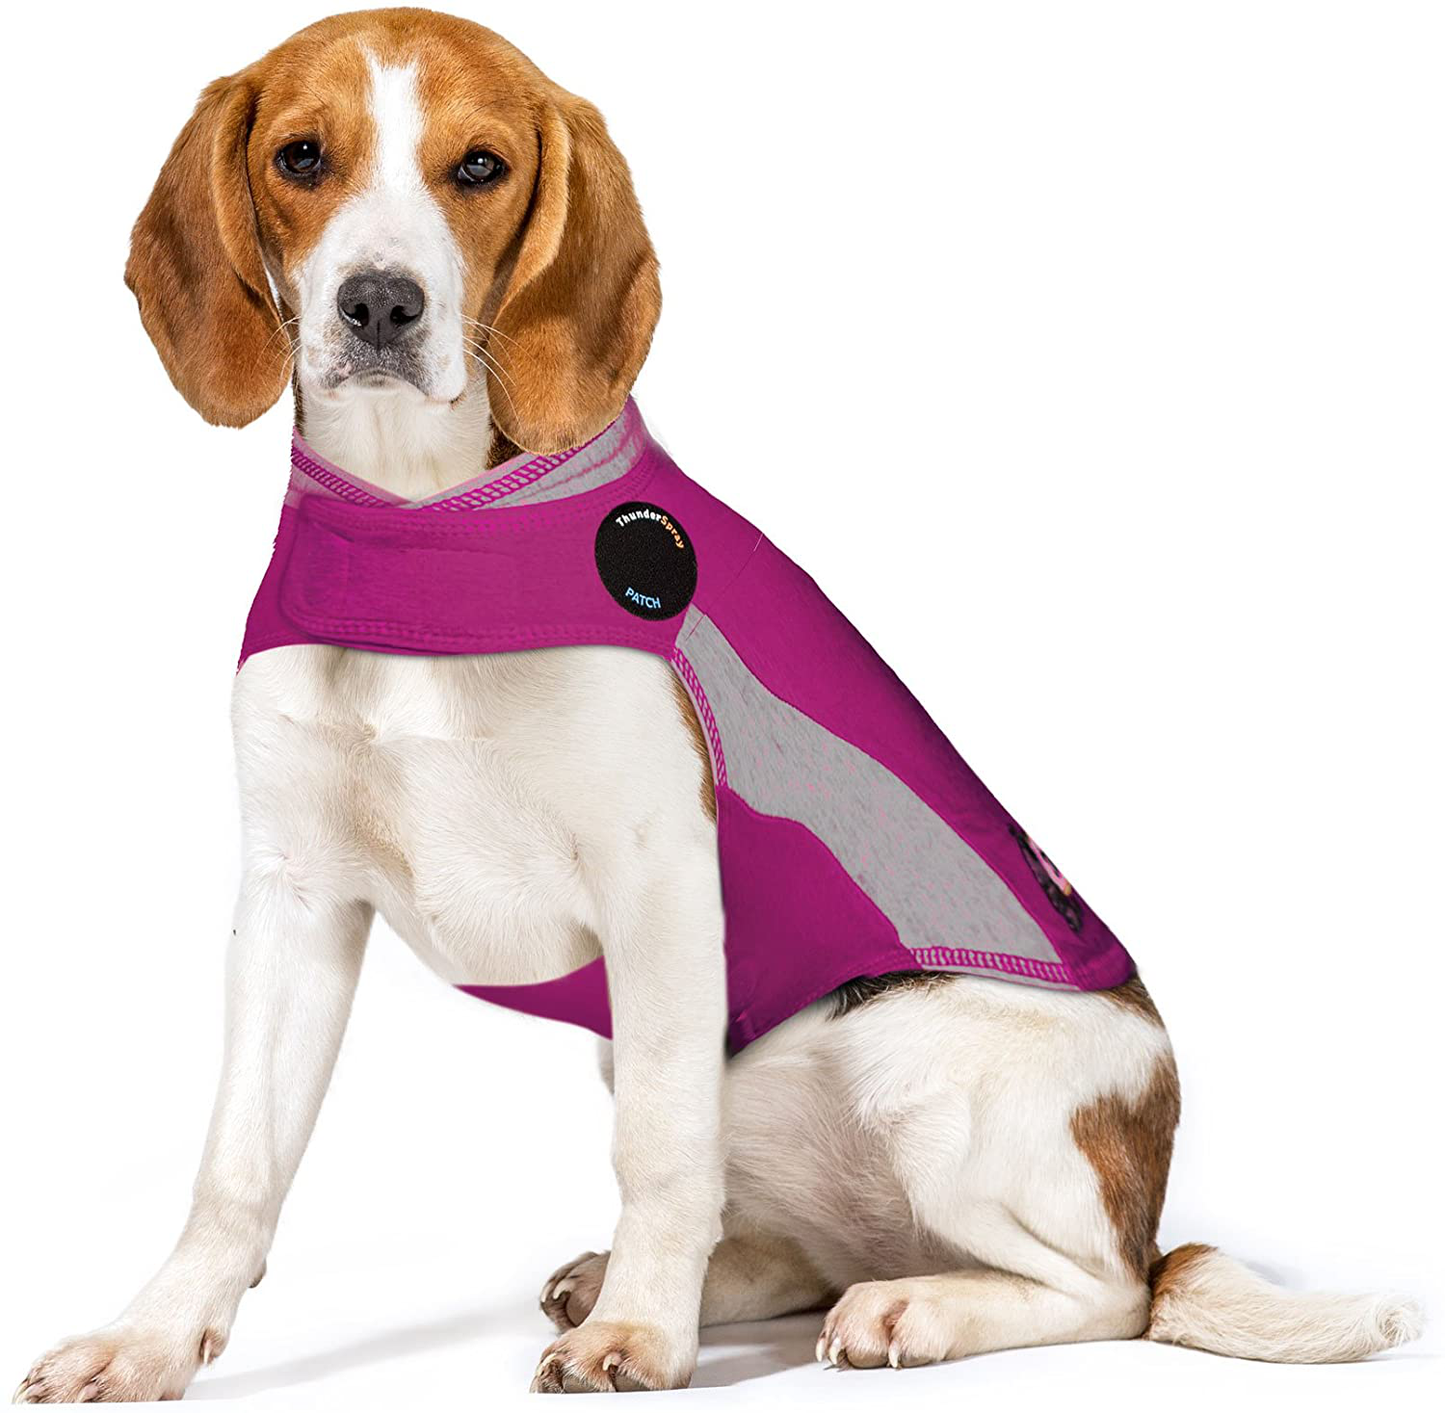 Thundershirt Thundershirt Dog Anxiety Jacket